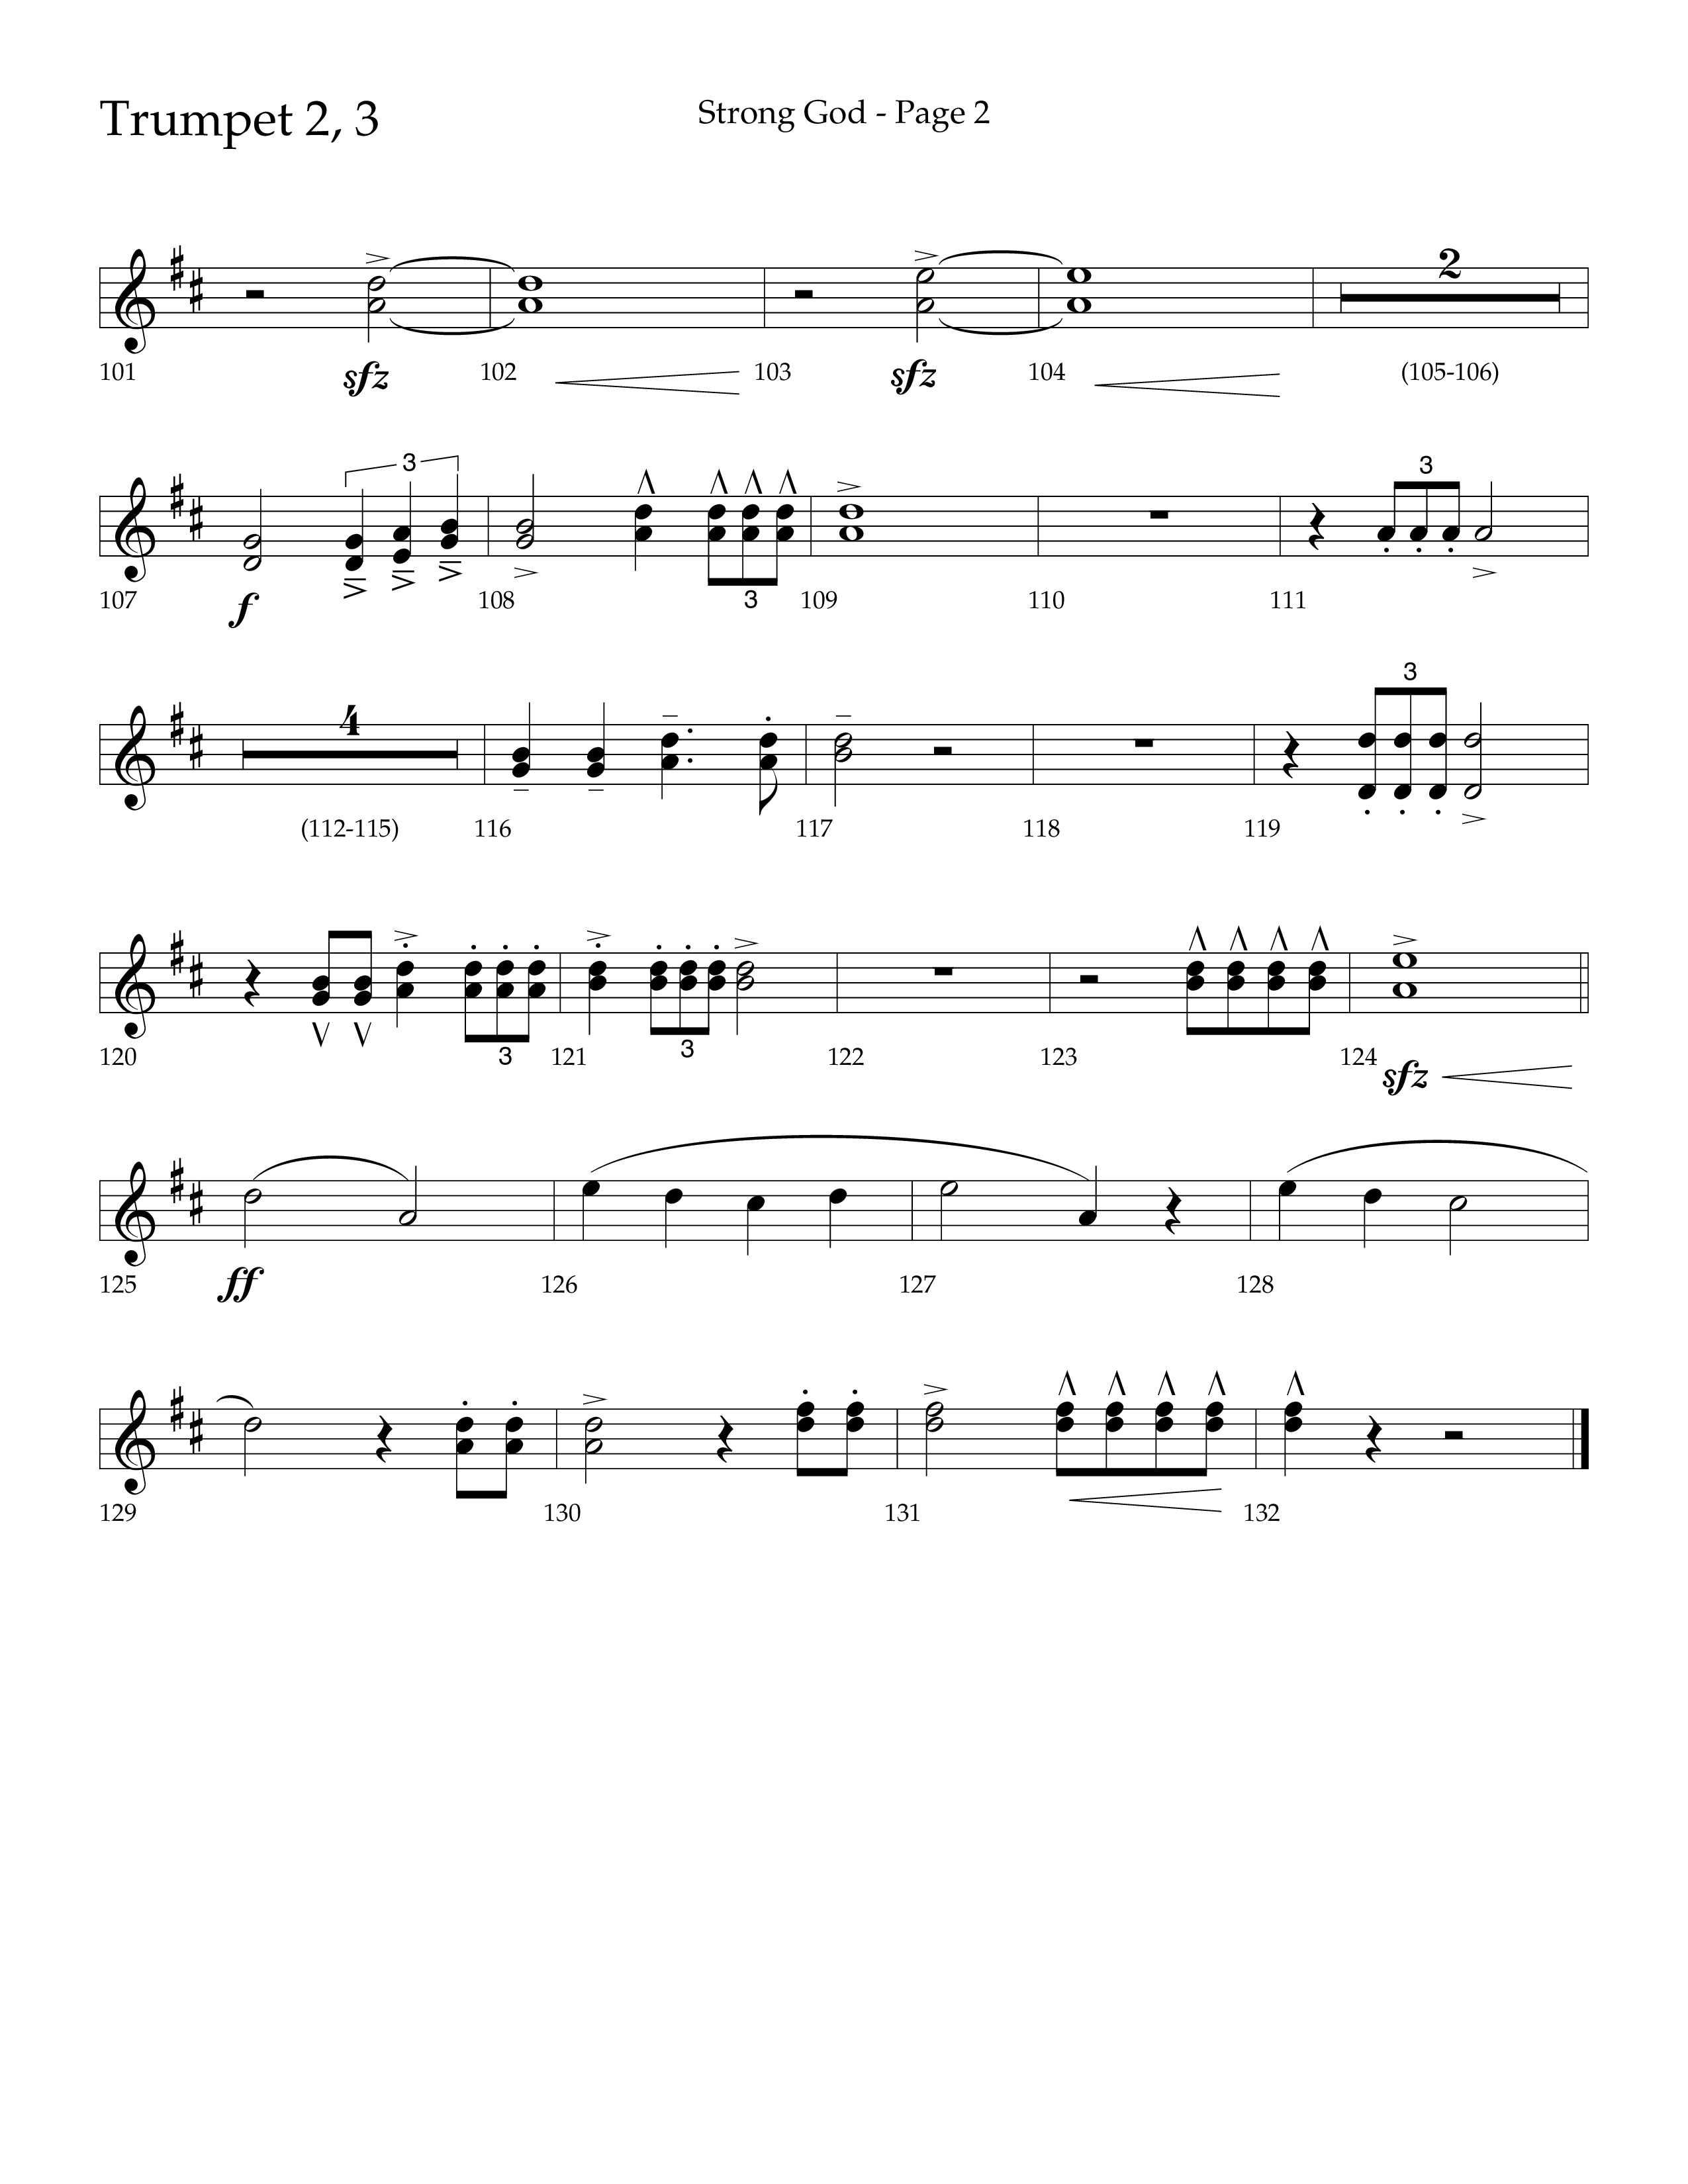 Strong God (Choral Anthem SATB) Trumpet 2/3 (Lifeway Choral / Arr. Craig Adams / Arr. Bruce Cokeroft / Orch. Craig Adams)